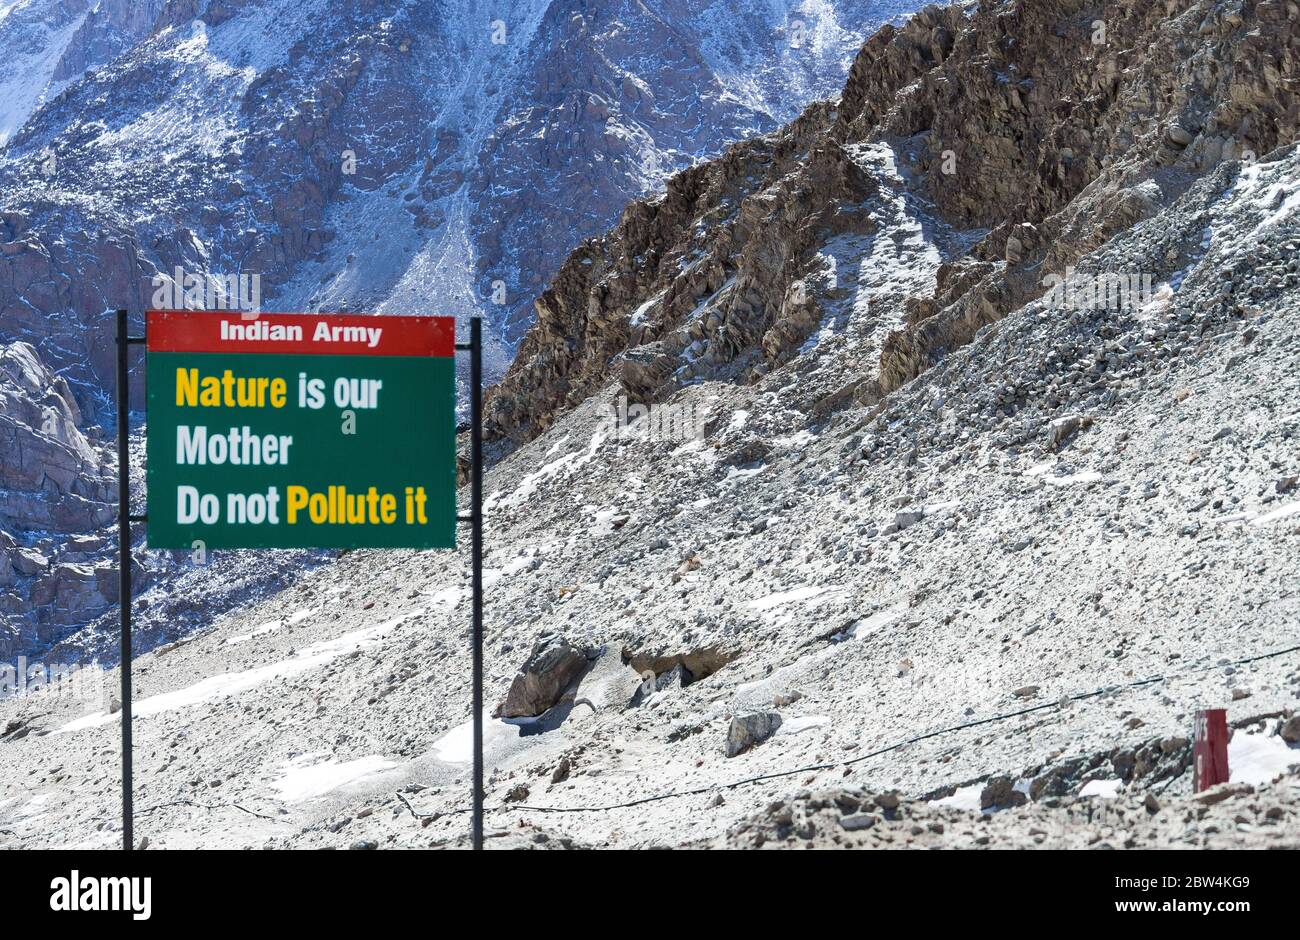 Cartello in Ladakh che afferma - la natura è nostra madre. Non inquinarlo. La foto è stata scattata da qualche parte nella bellezza naturale dell'India. Foto Stock